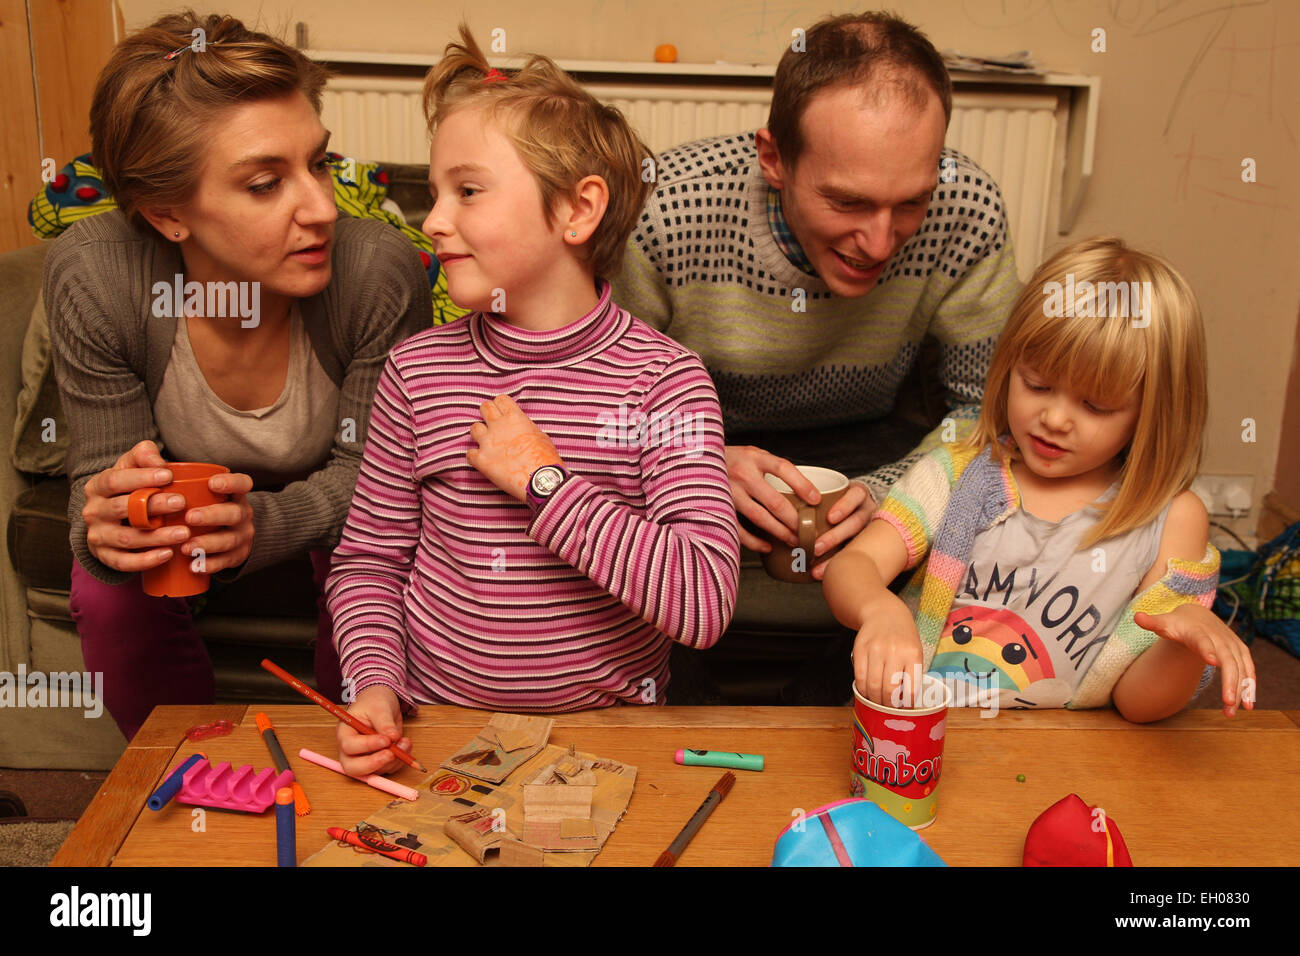 Eltern und Kinder basteln - Modell veröffentlicht Stockfoto